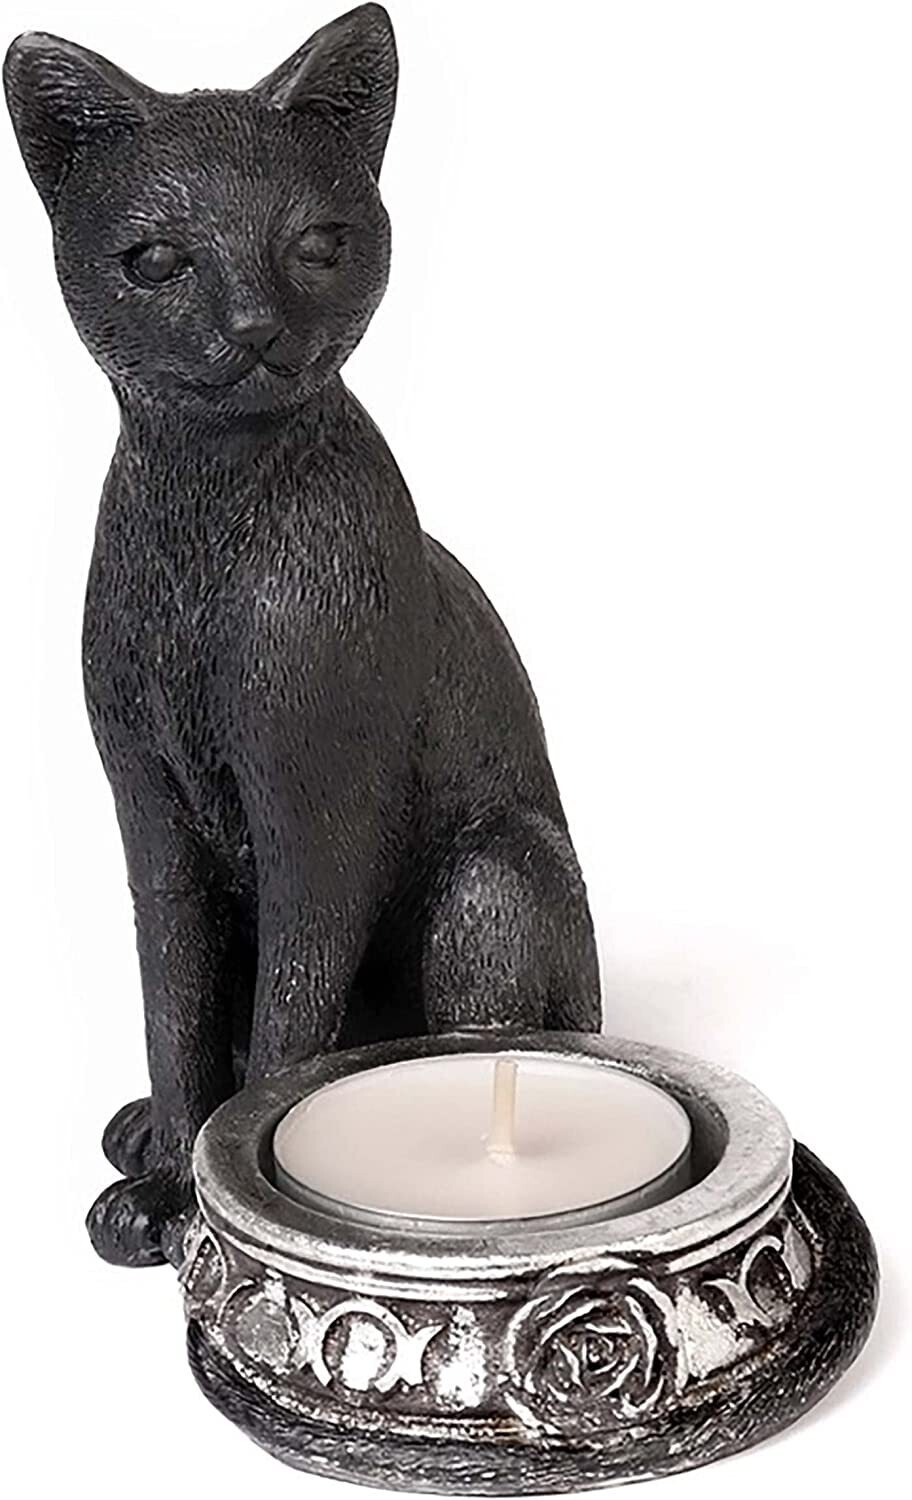 Black Cat Tea Light Holder